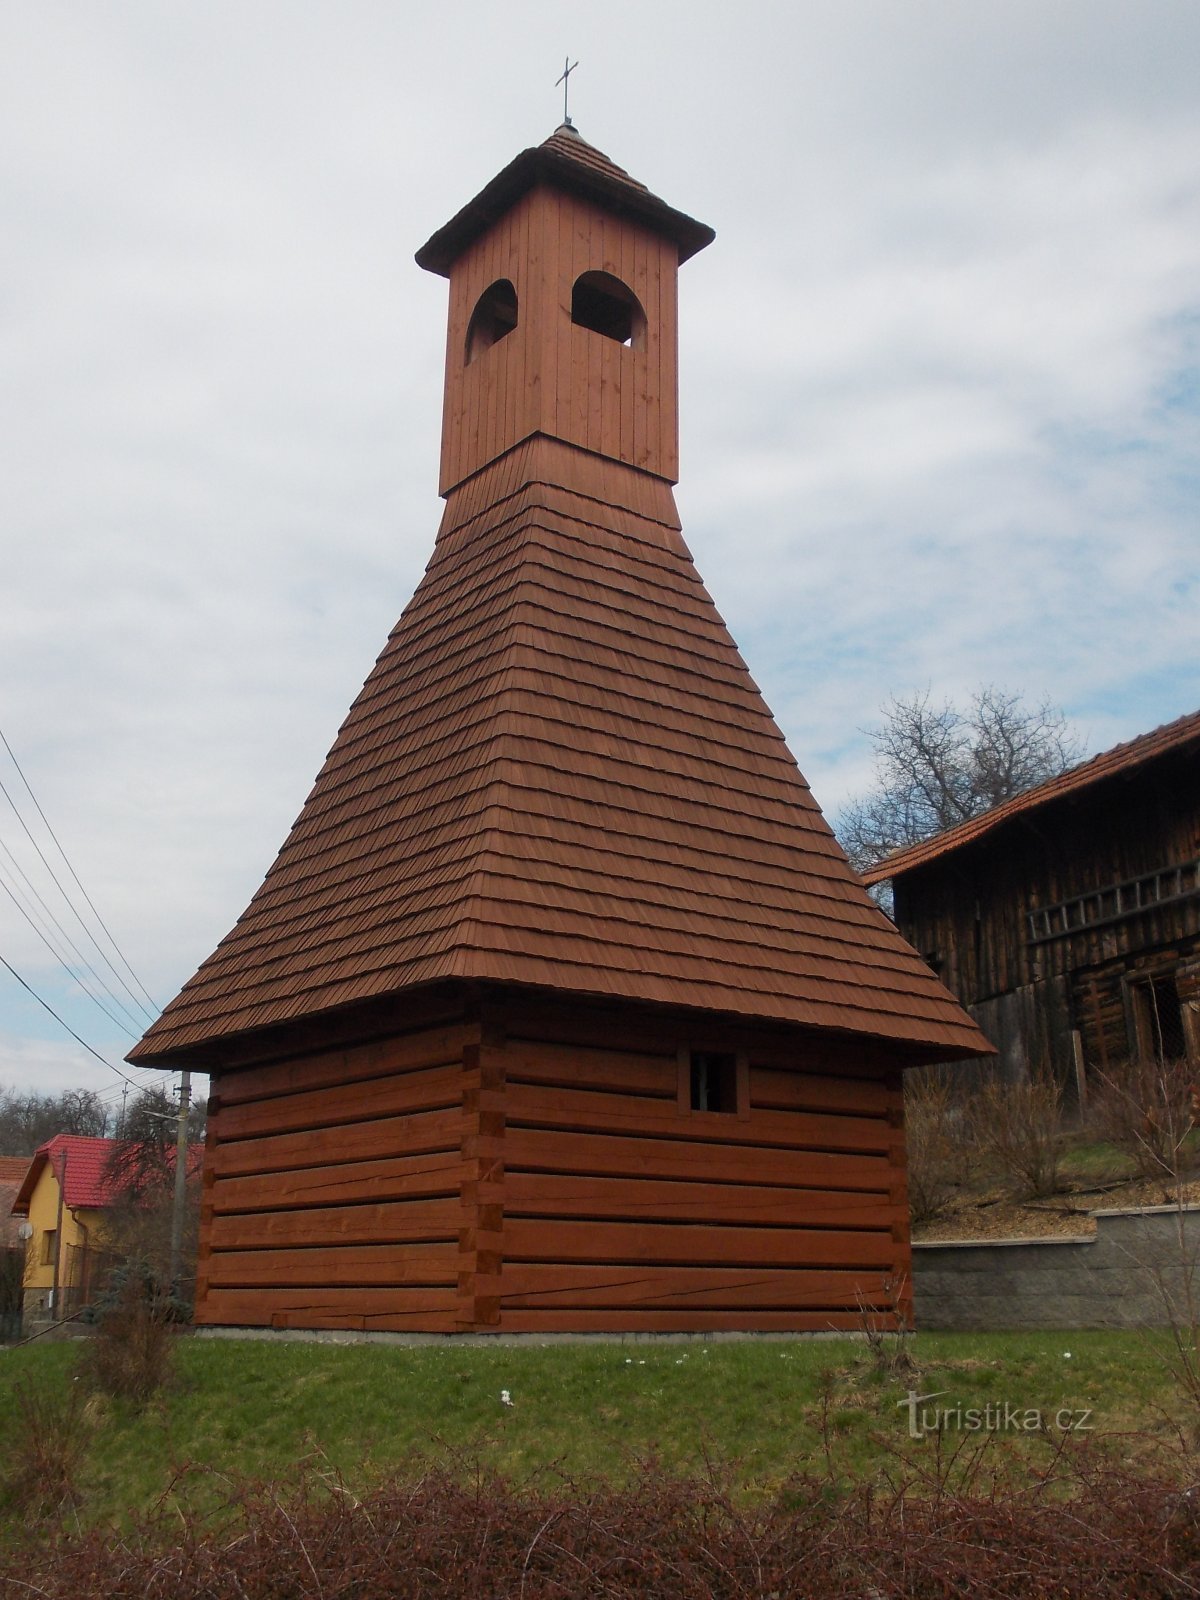 replika izvornog drvenog zvonika